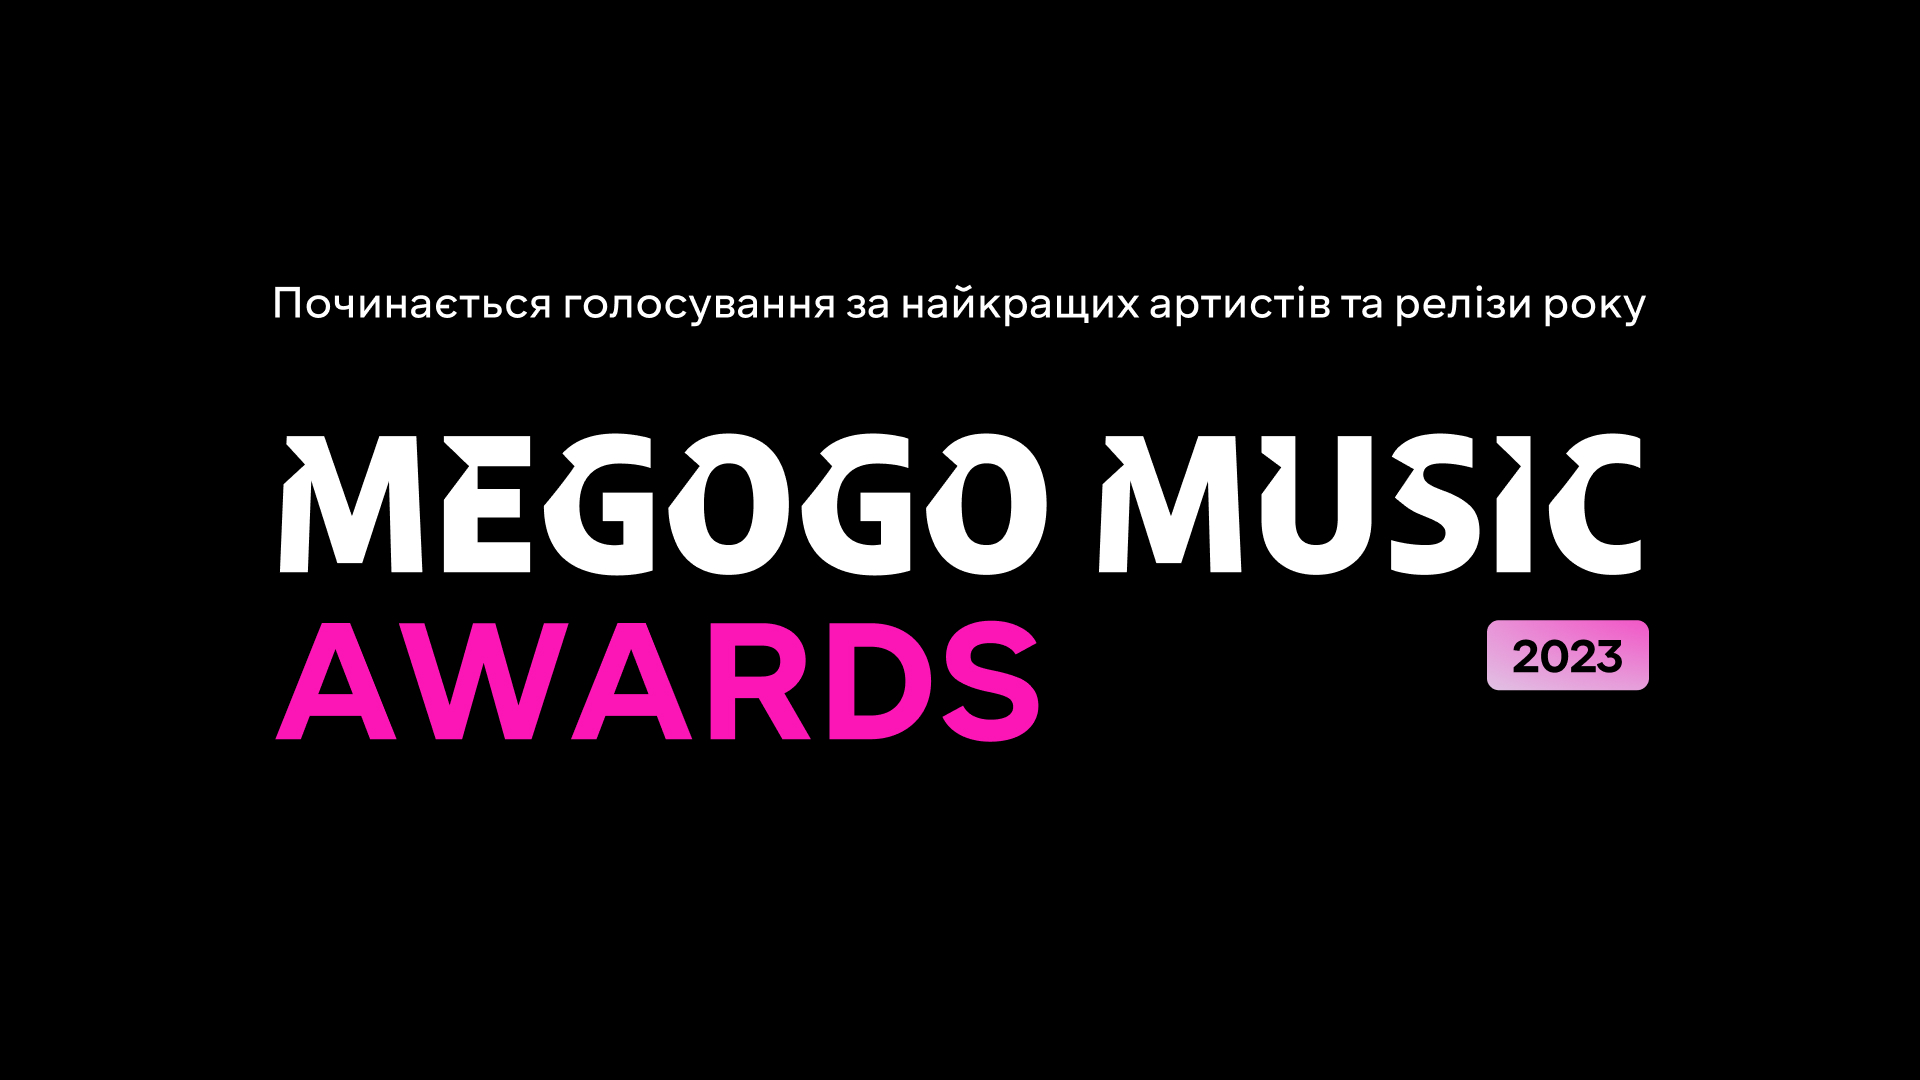 🏆 Vidkryto golosuvannja MEGOGO MUSIC AWARDS 2023 za najkraščyh artystiv roku